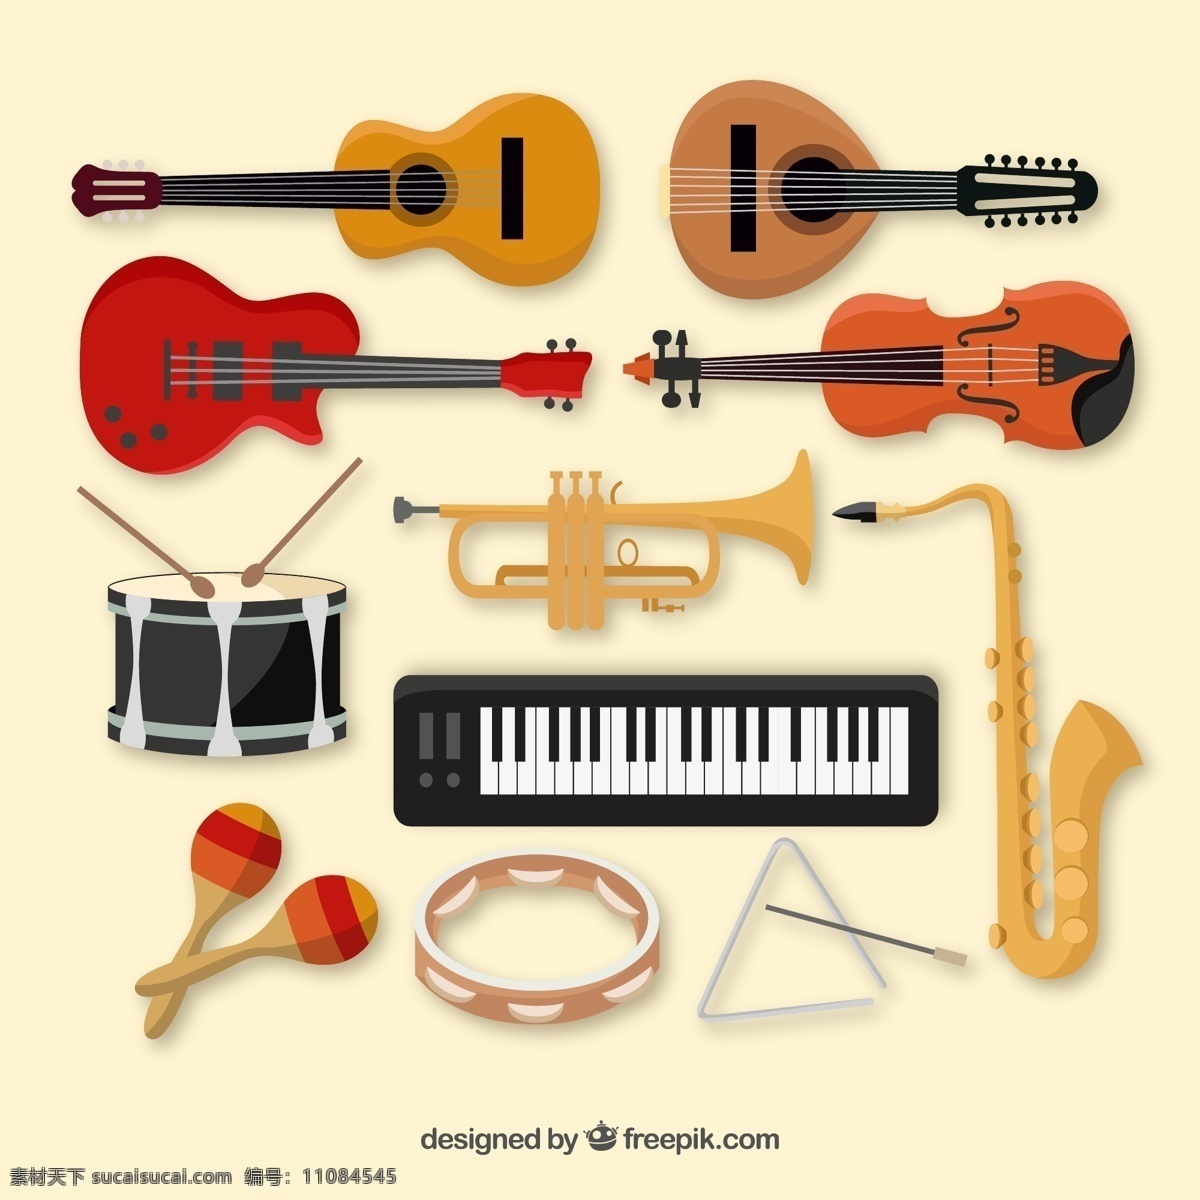 款 精美 乐器 矢量 款精美乐器 乐器设计 矢量素材 二胡 吉他 电子琴 手鼓 白色